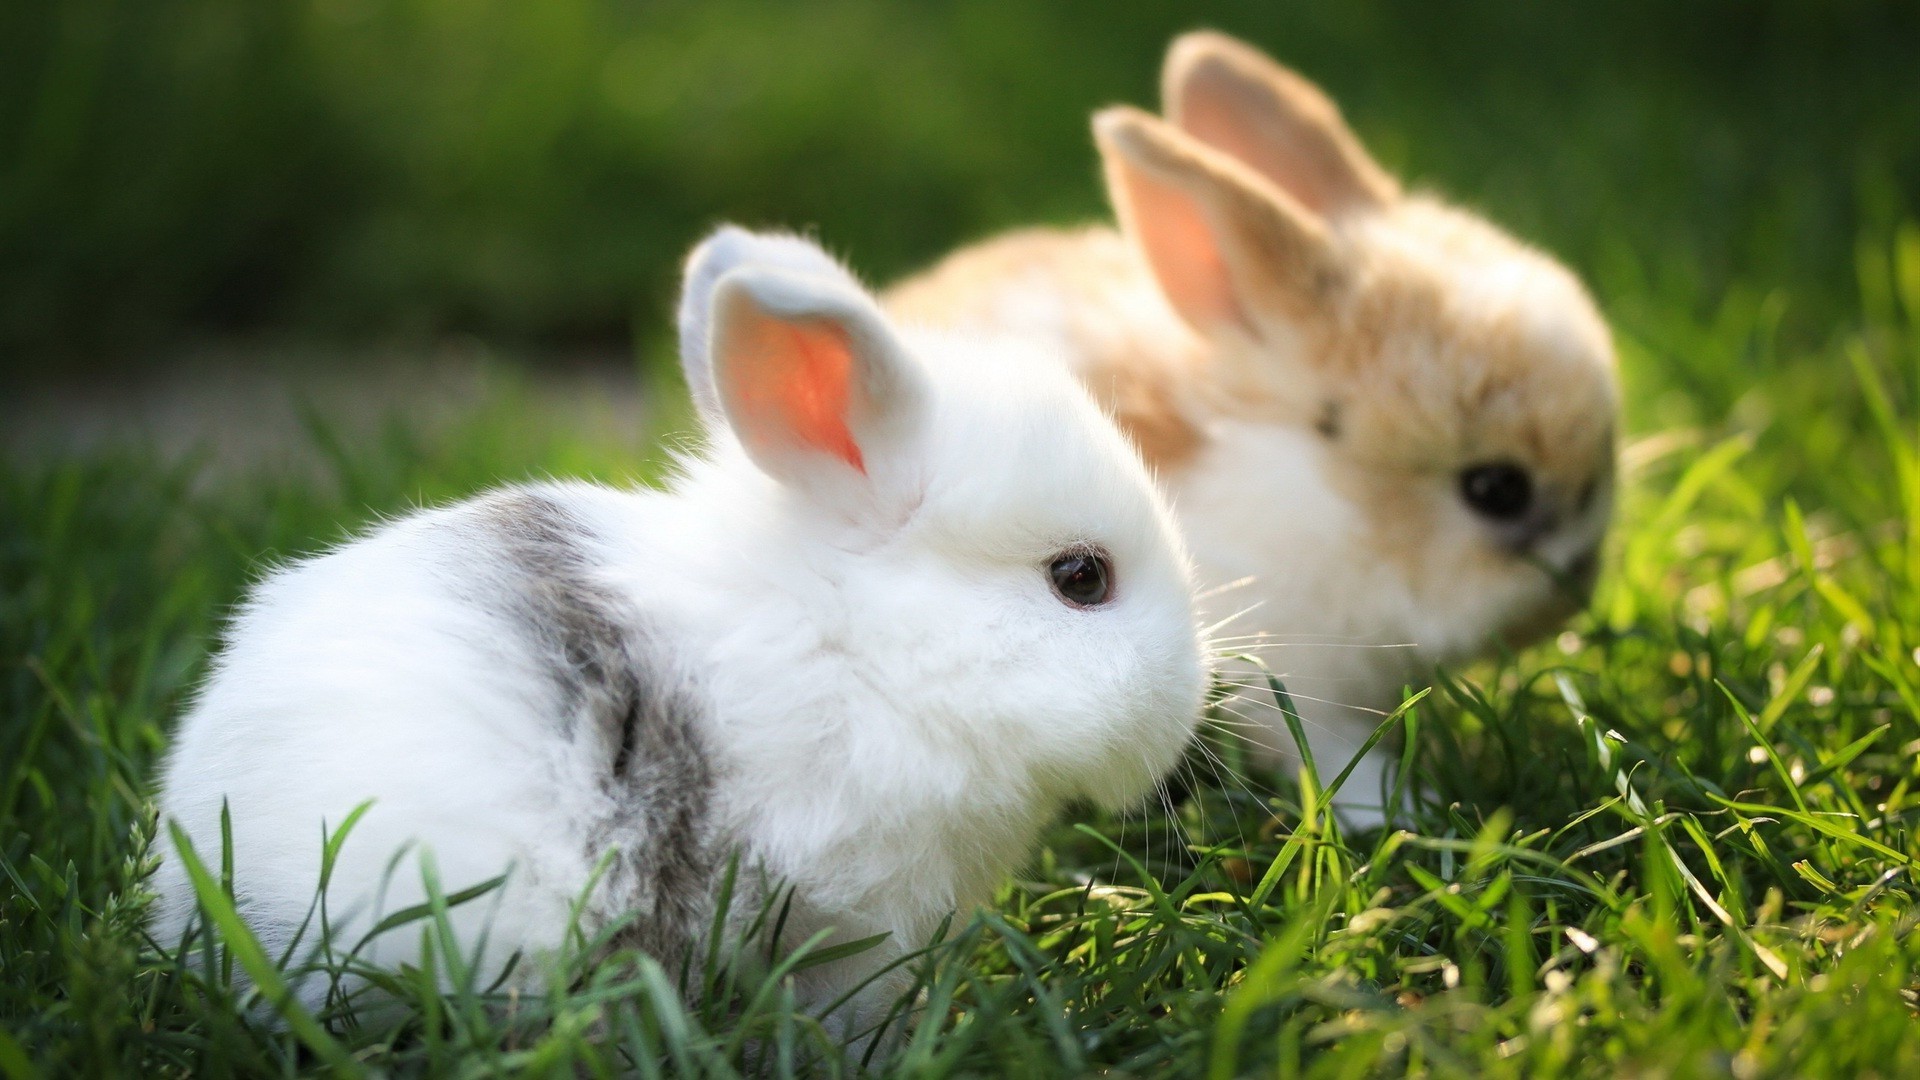 кролики кролик зайчик милые пасха мало пуховый трава ребенок молодой животное мех пэт природа млекопитающее очаровательны грызун сидеть таме портрет